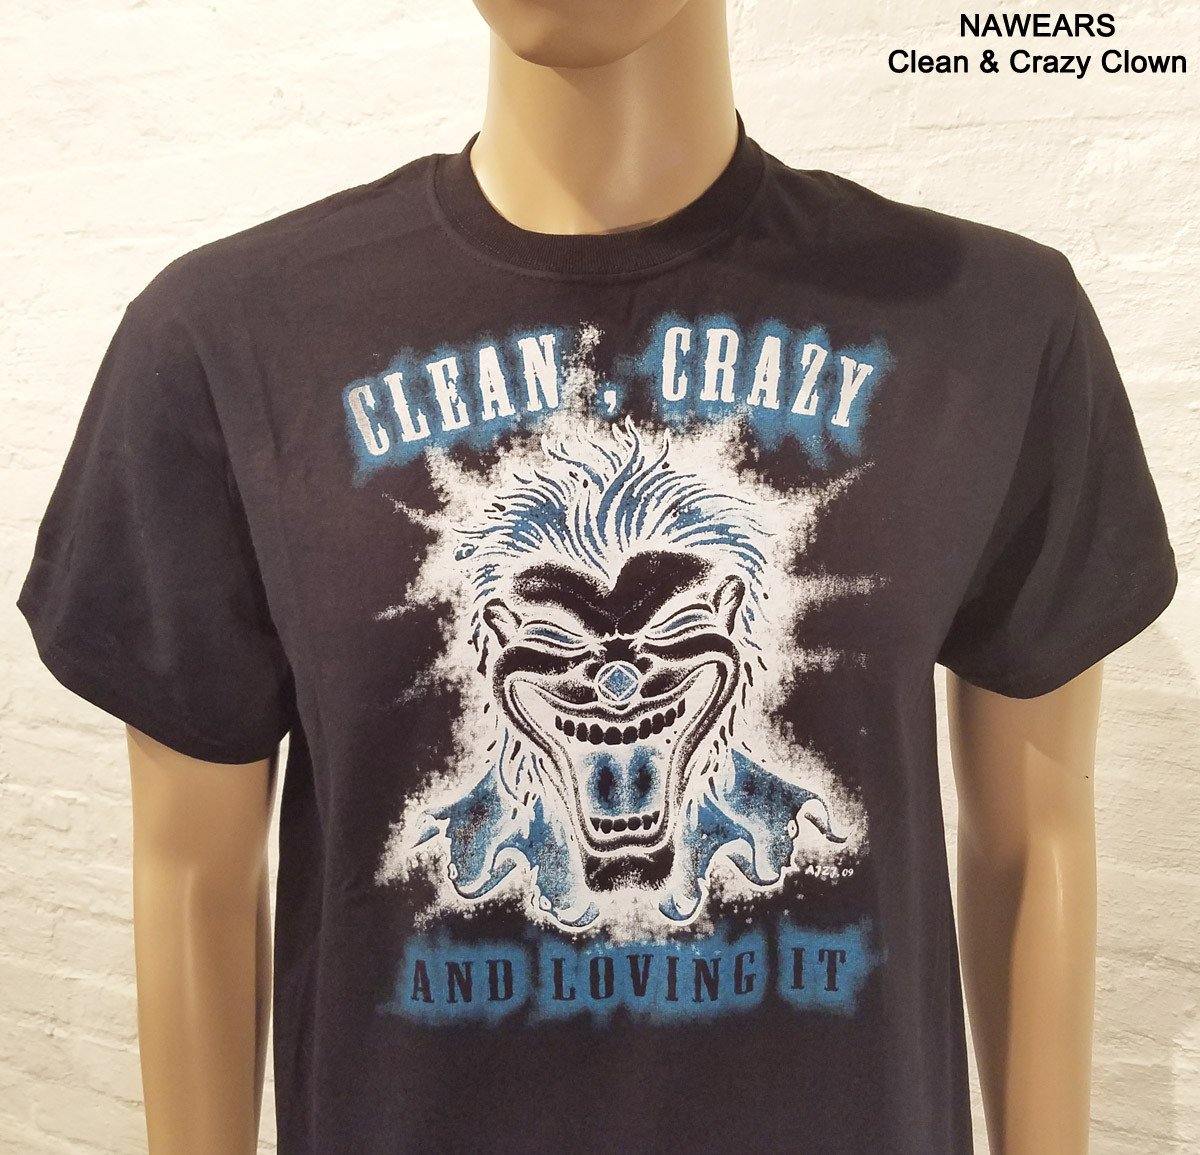 Clean & Crazy Clown T-shirt - nawears